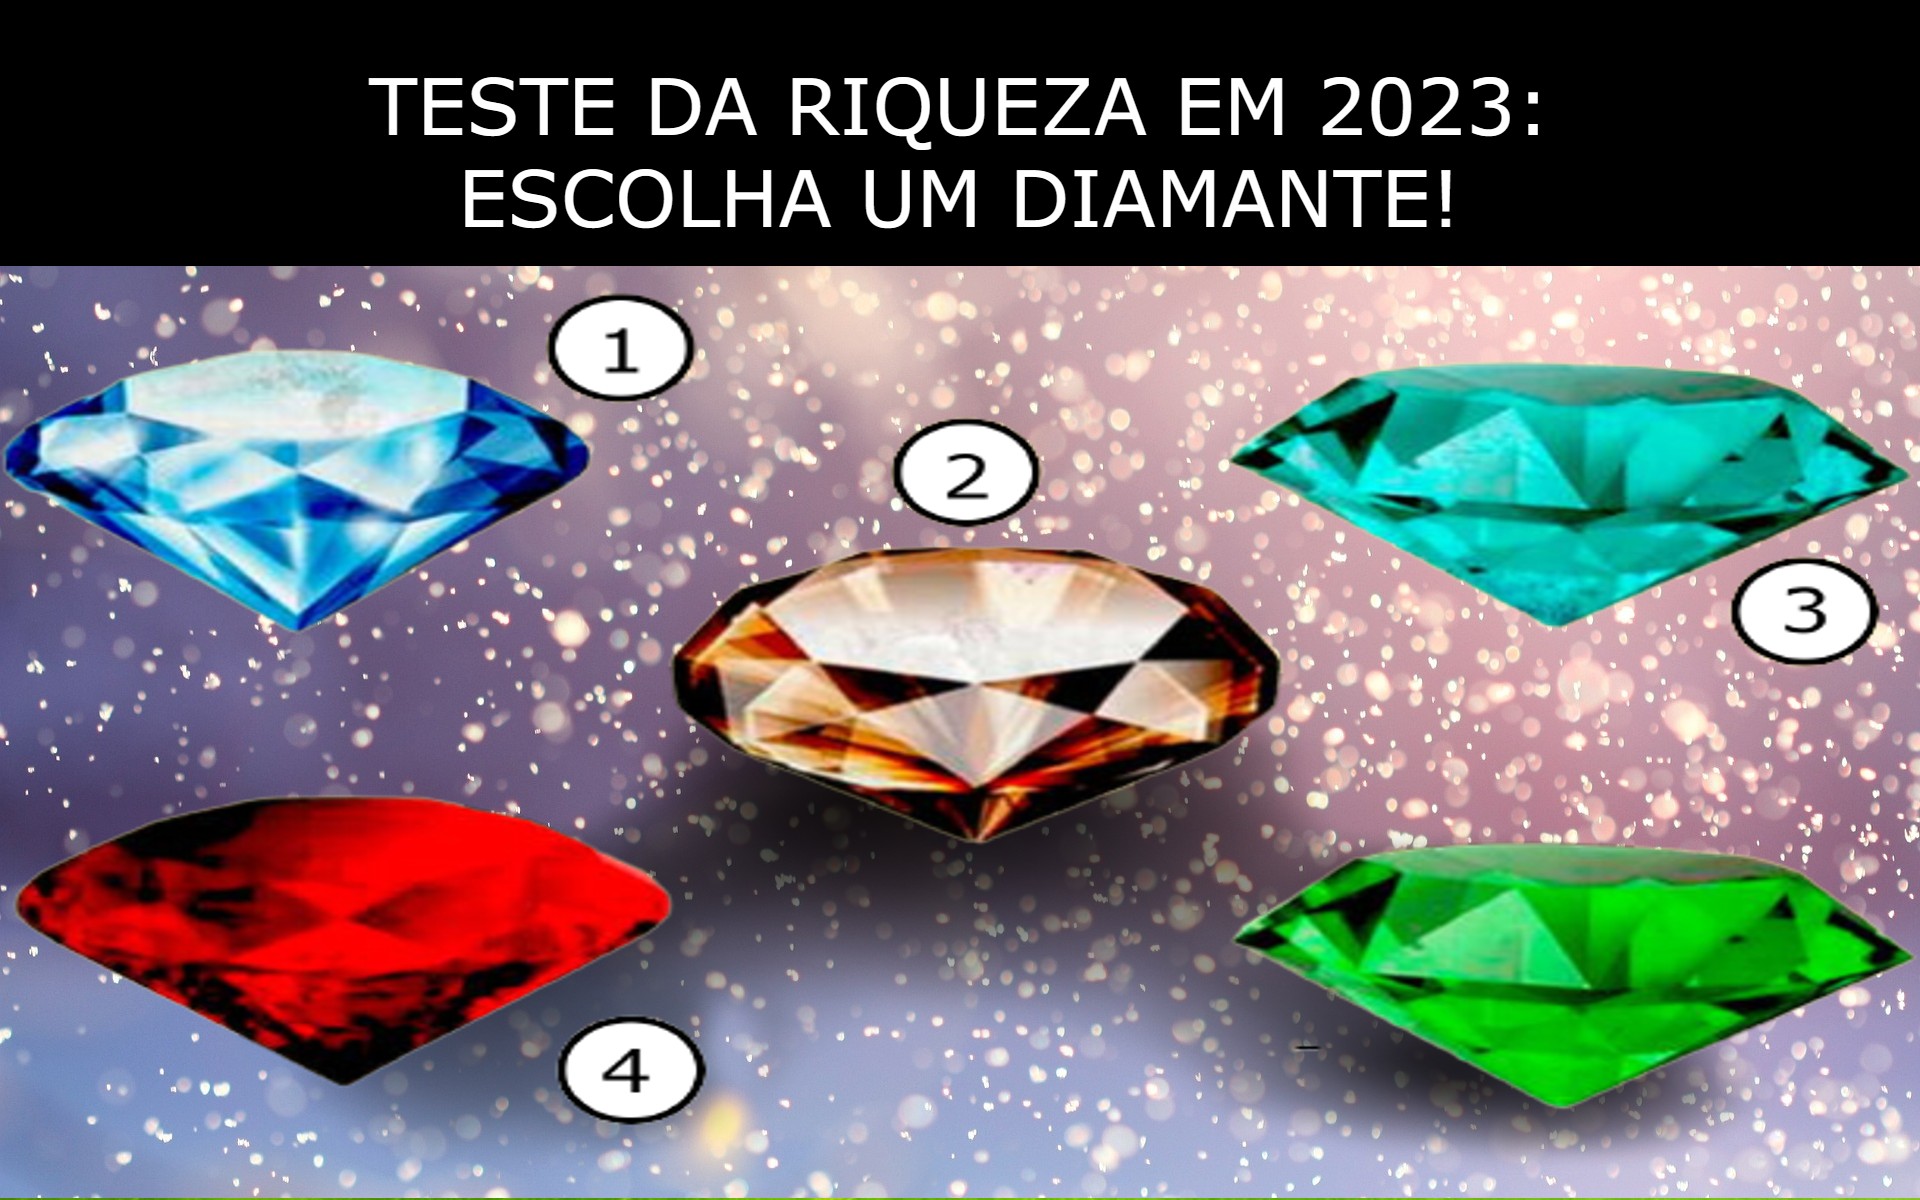 Escolha um diamante e descubra qual será sua maior RIQUEZA em 2023